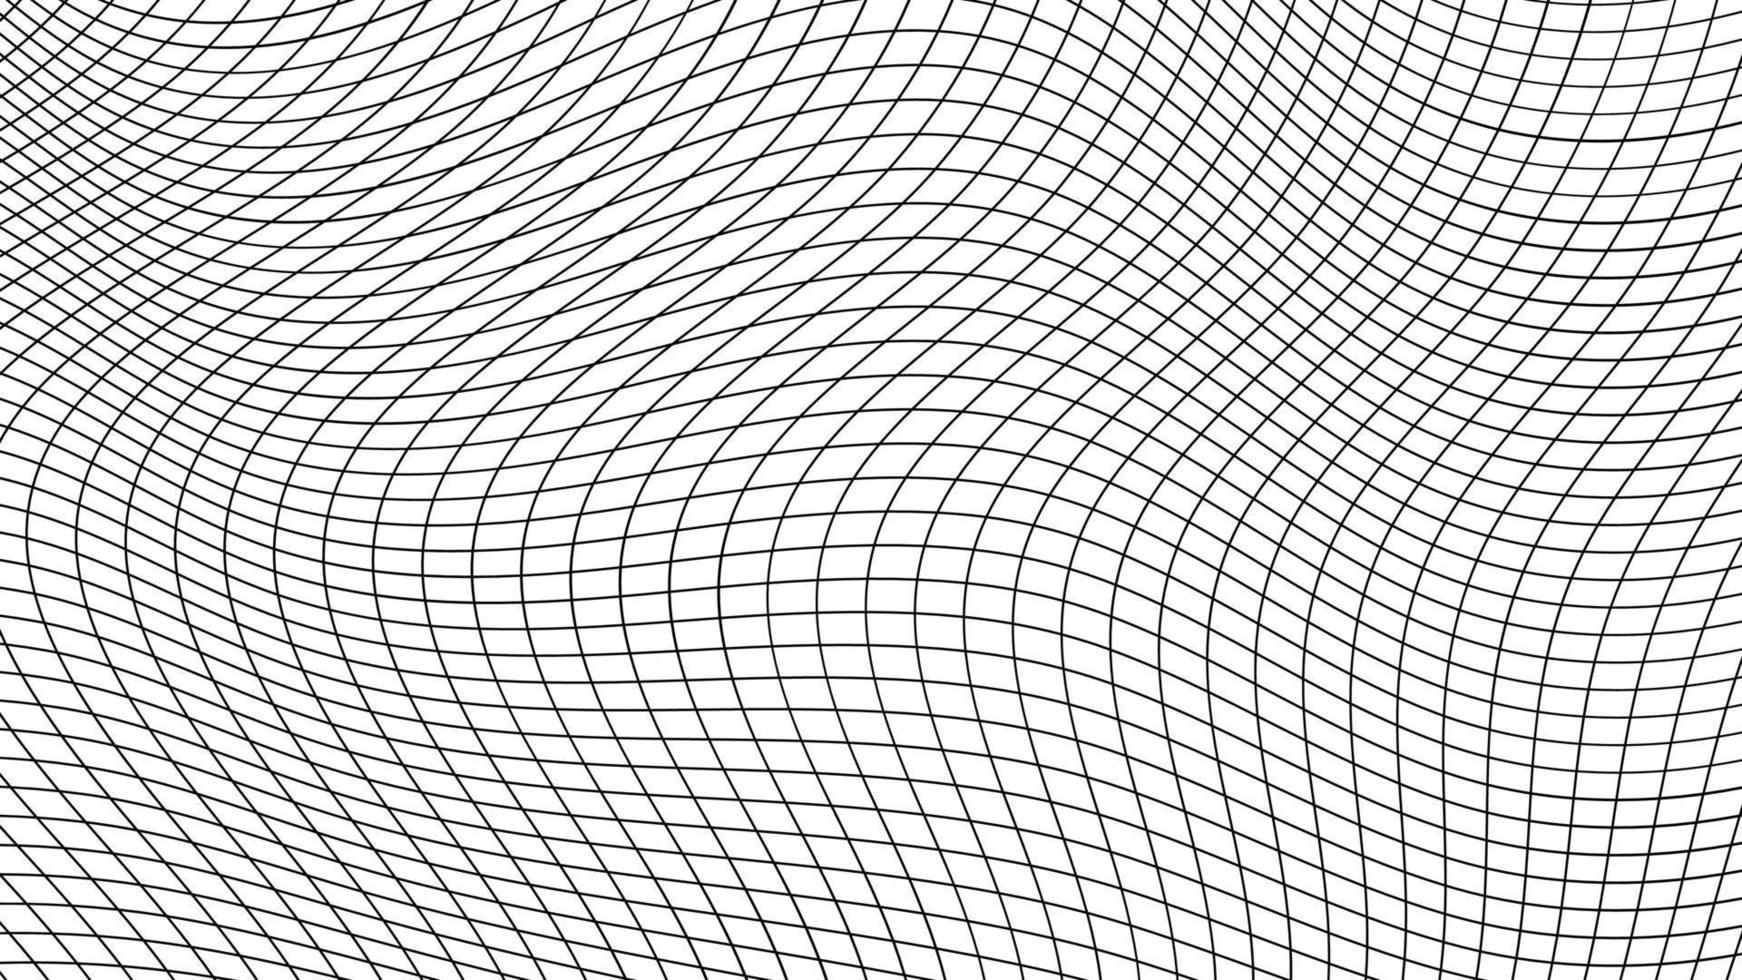 Pattern dynamic grid, thin grid curve, geometric flex wavy lines vector